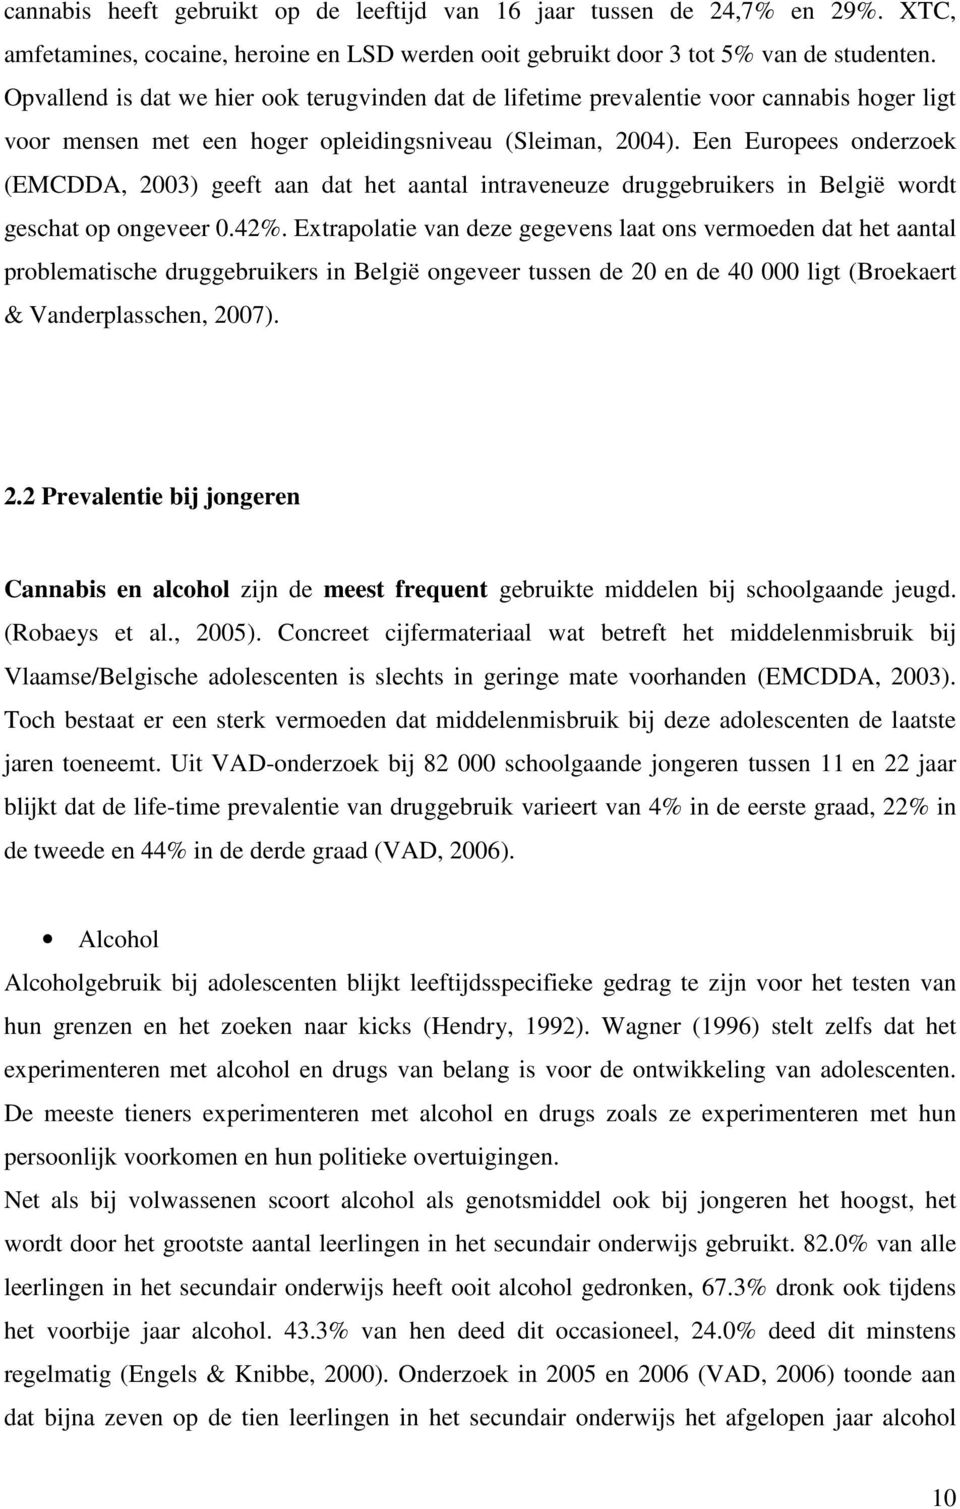 Een Europees onderzoek (EMCDDA, 2003) geeft aan dat het aantal intraveneuze druggebruikers in België wordt geschat op ongeveer 0.42%.